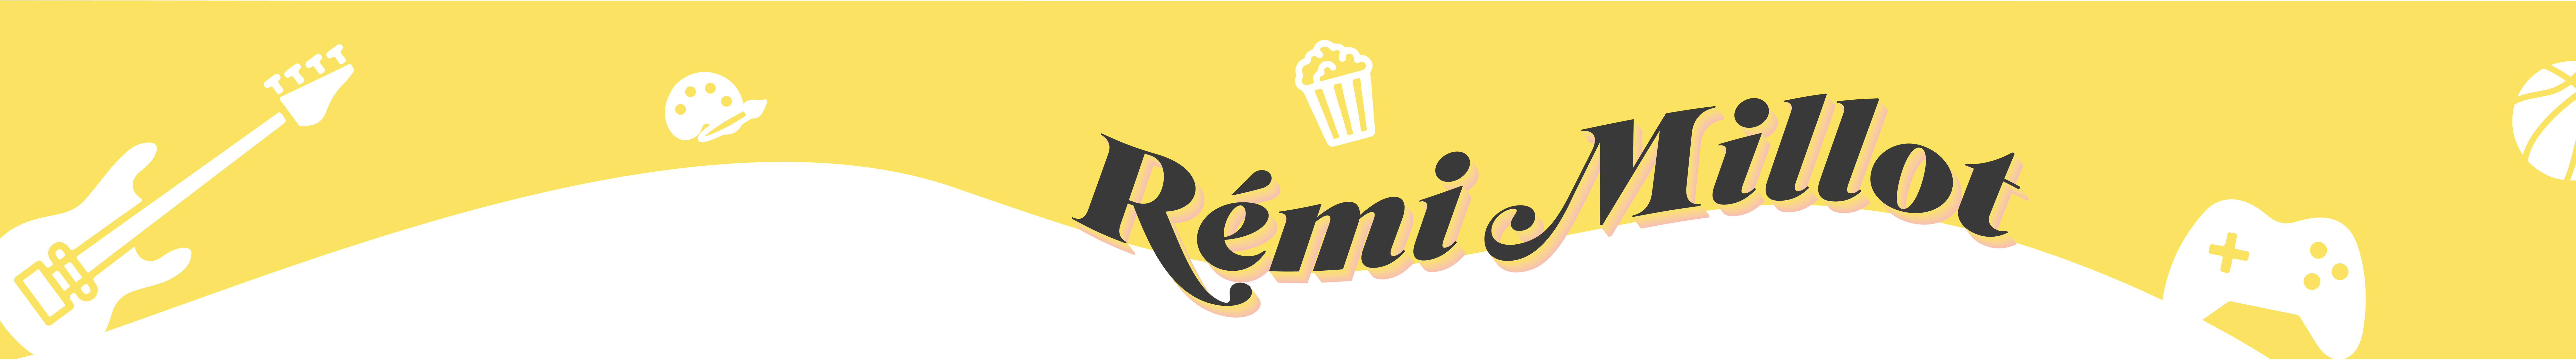 Rémi Millot's profile banner